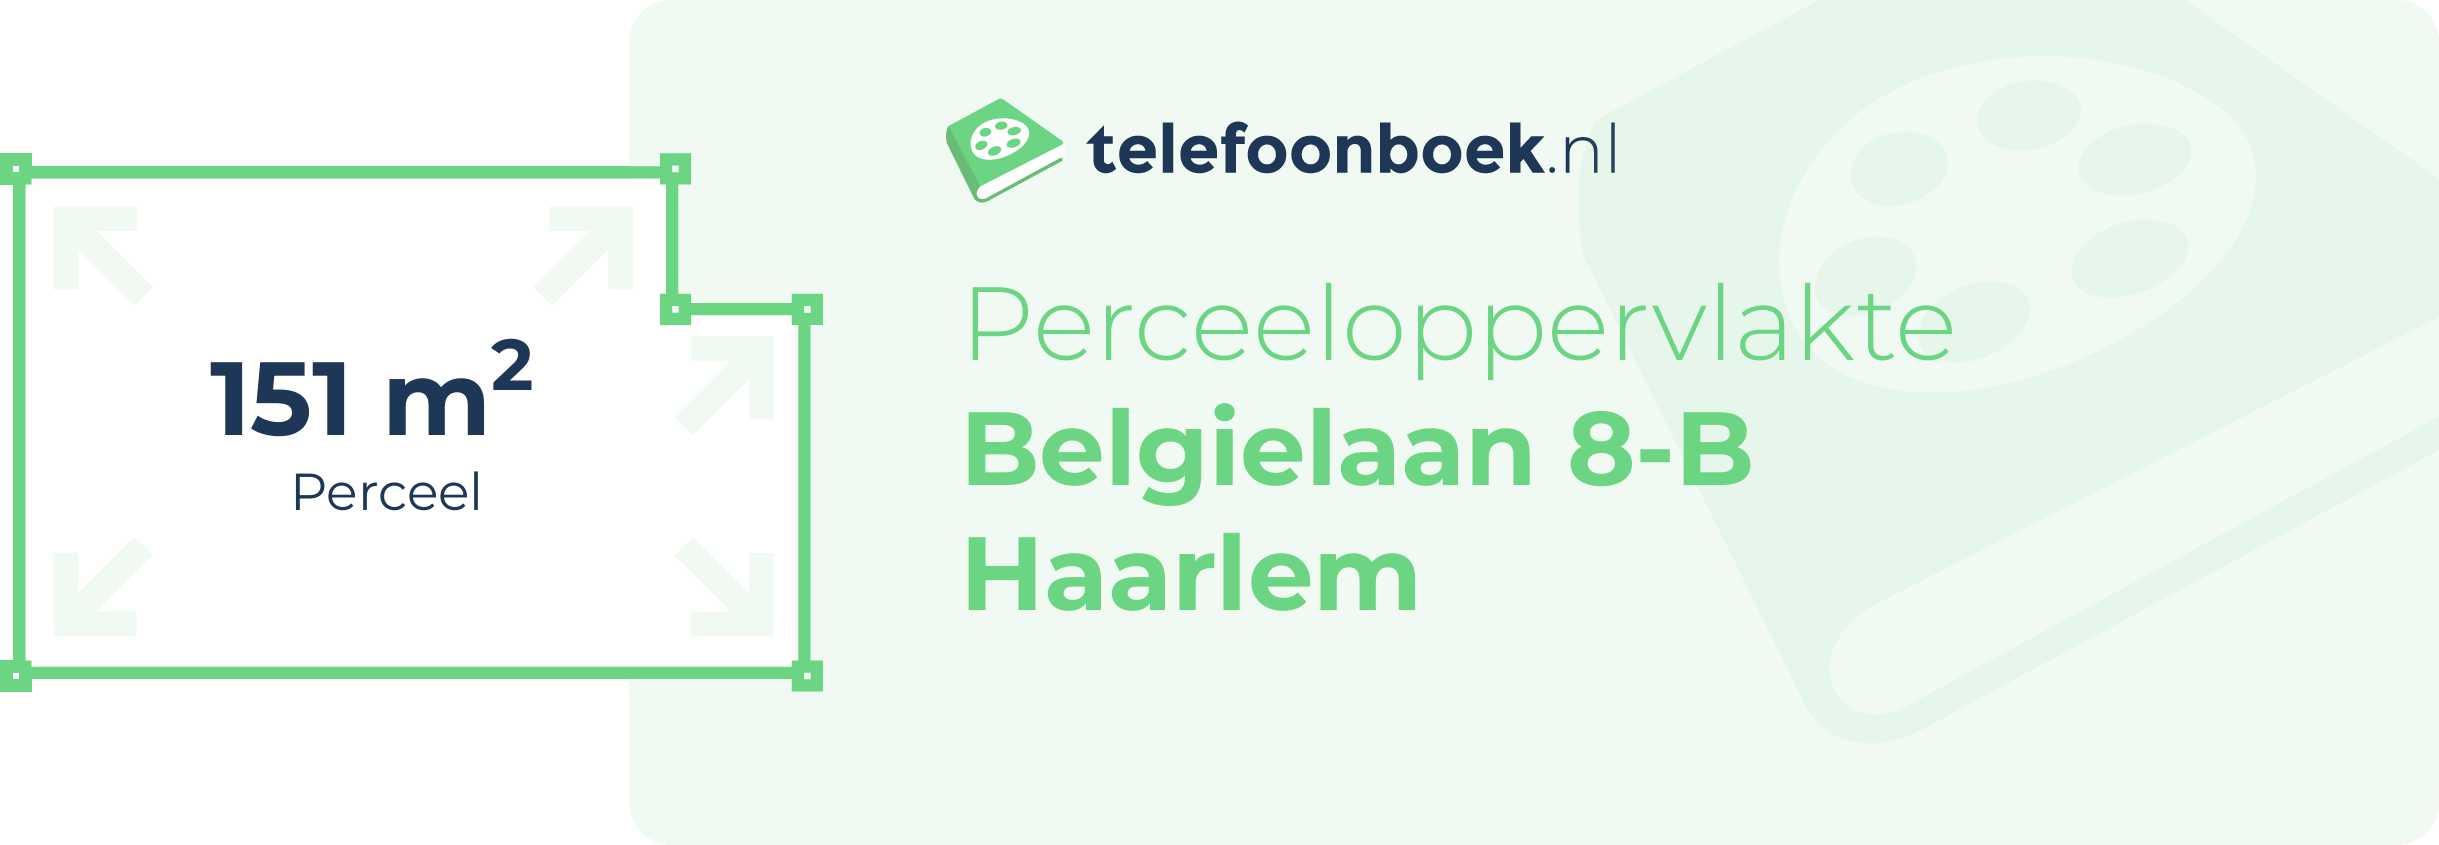 Perceeloppervlakte Belgielaan 8-B Haarlem